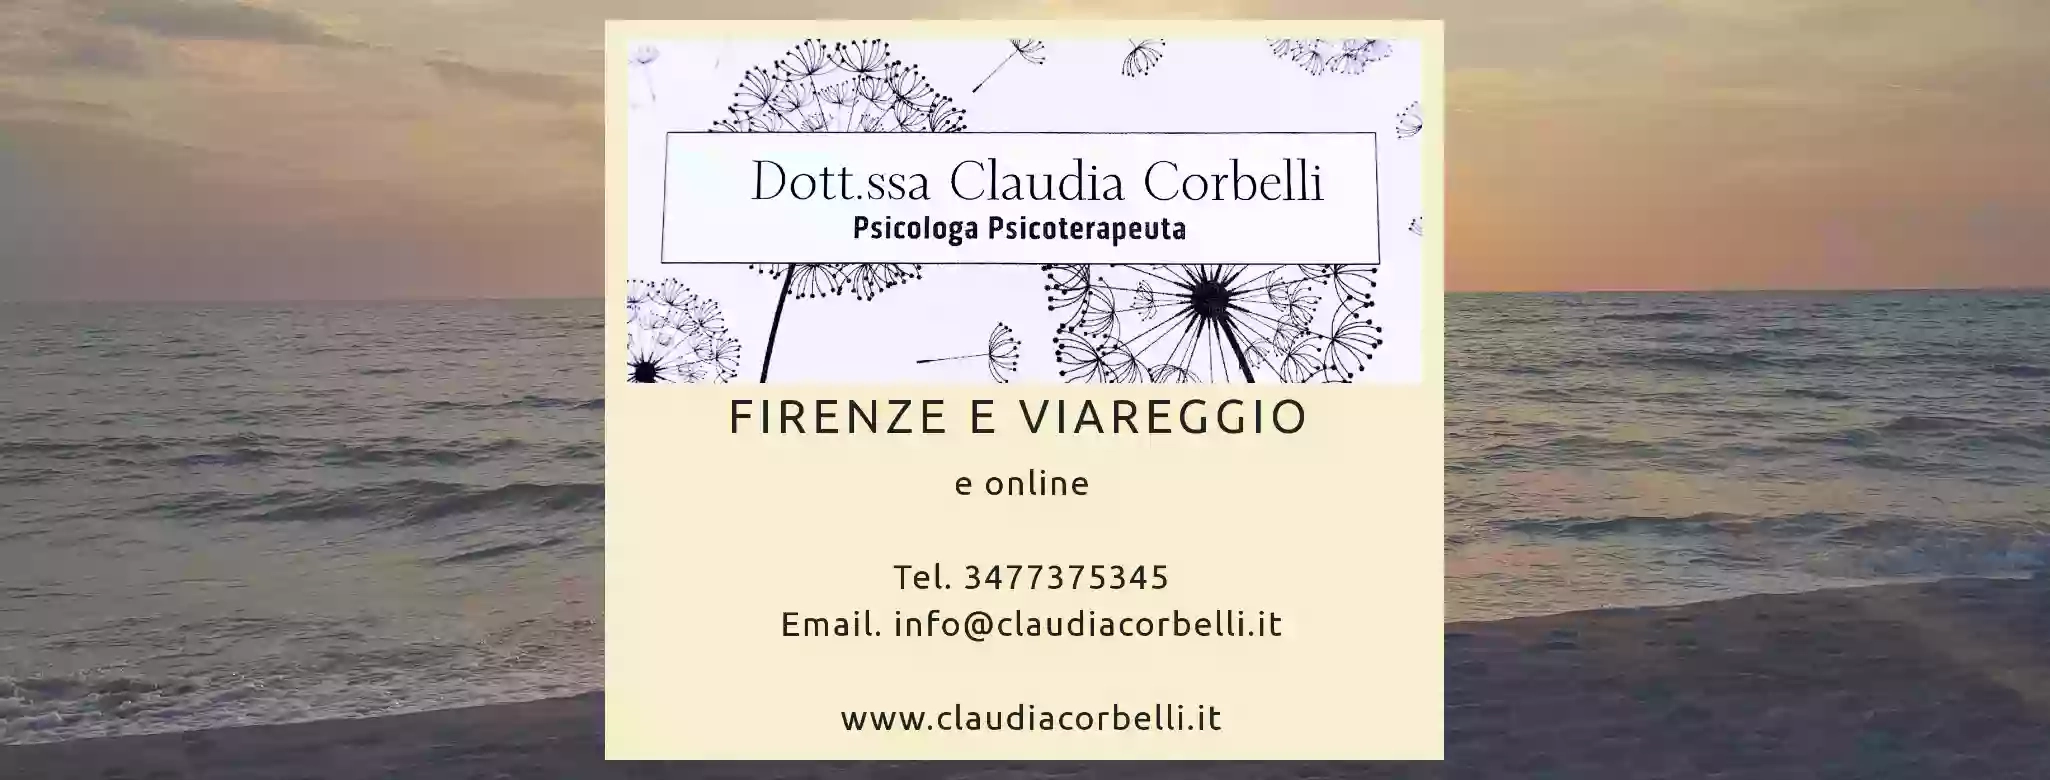 Dott.ssa Claudia Corbelli Psicologo Psicoterapeuta Firenze